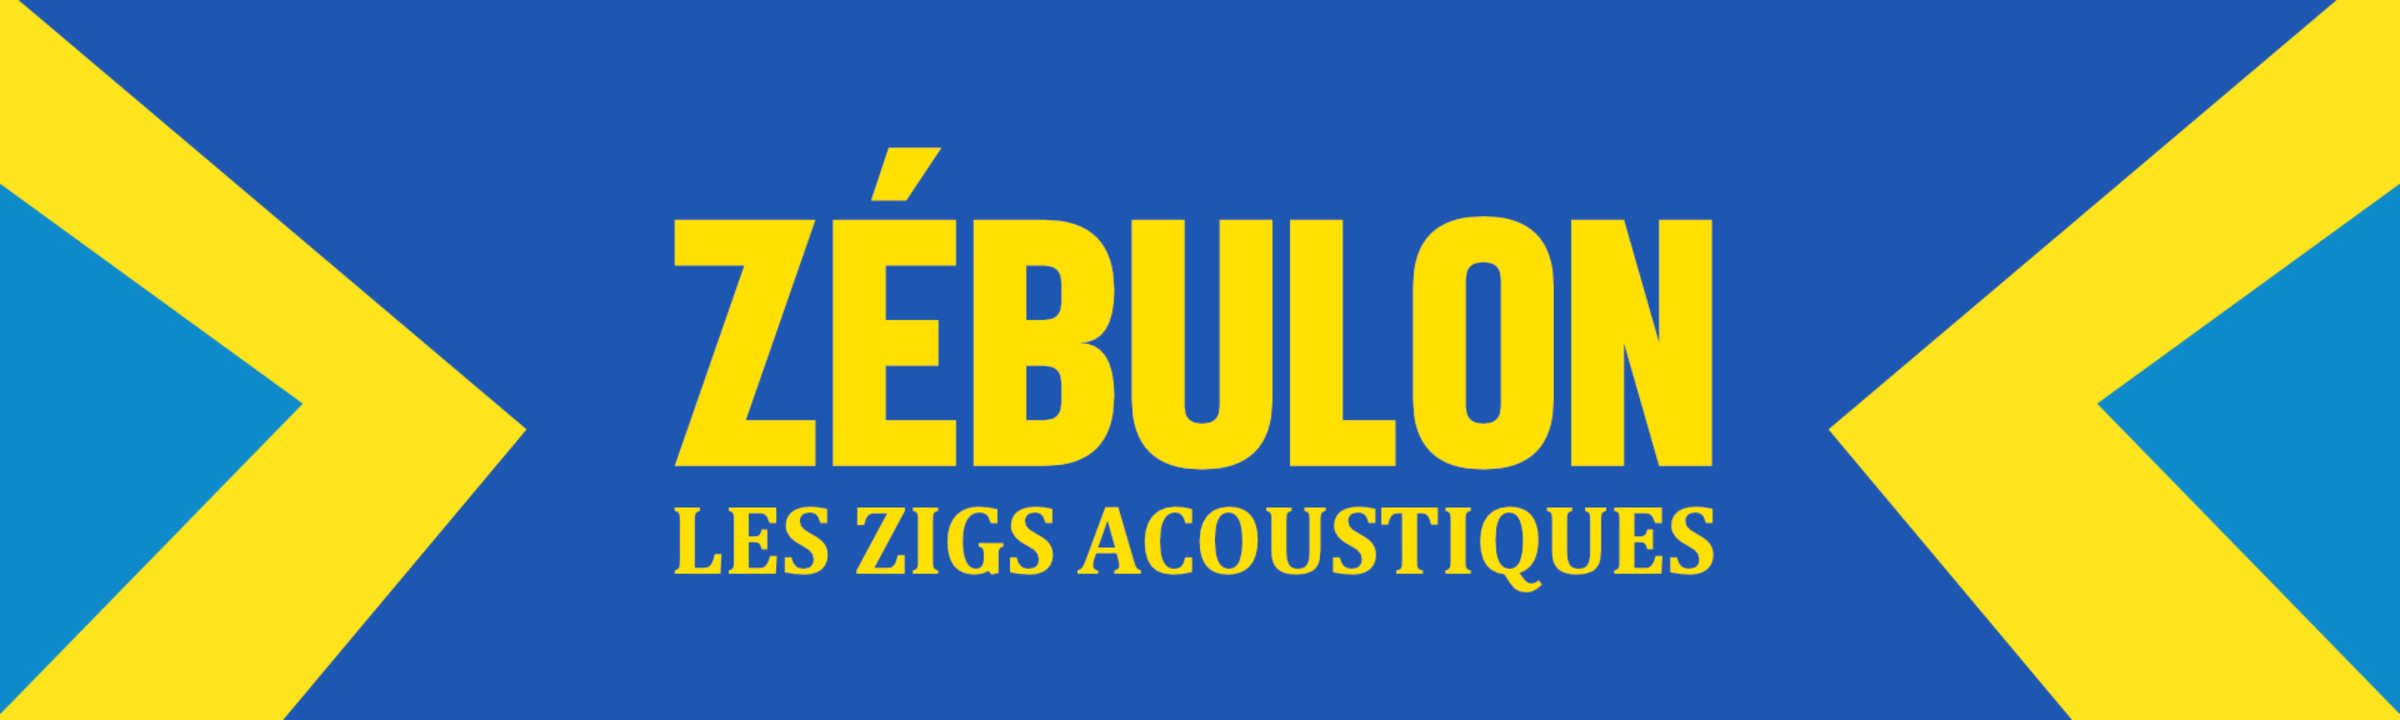 Zébulon + Bruno Rodéo